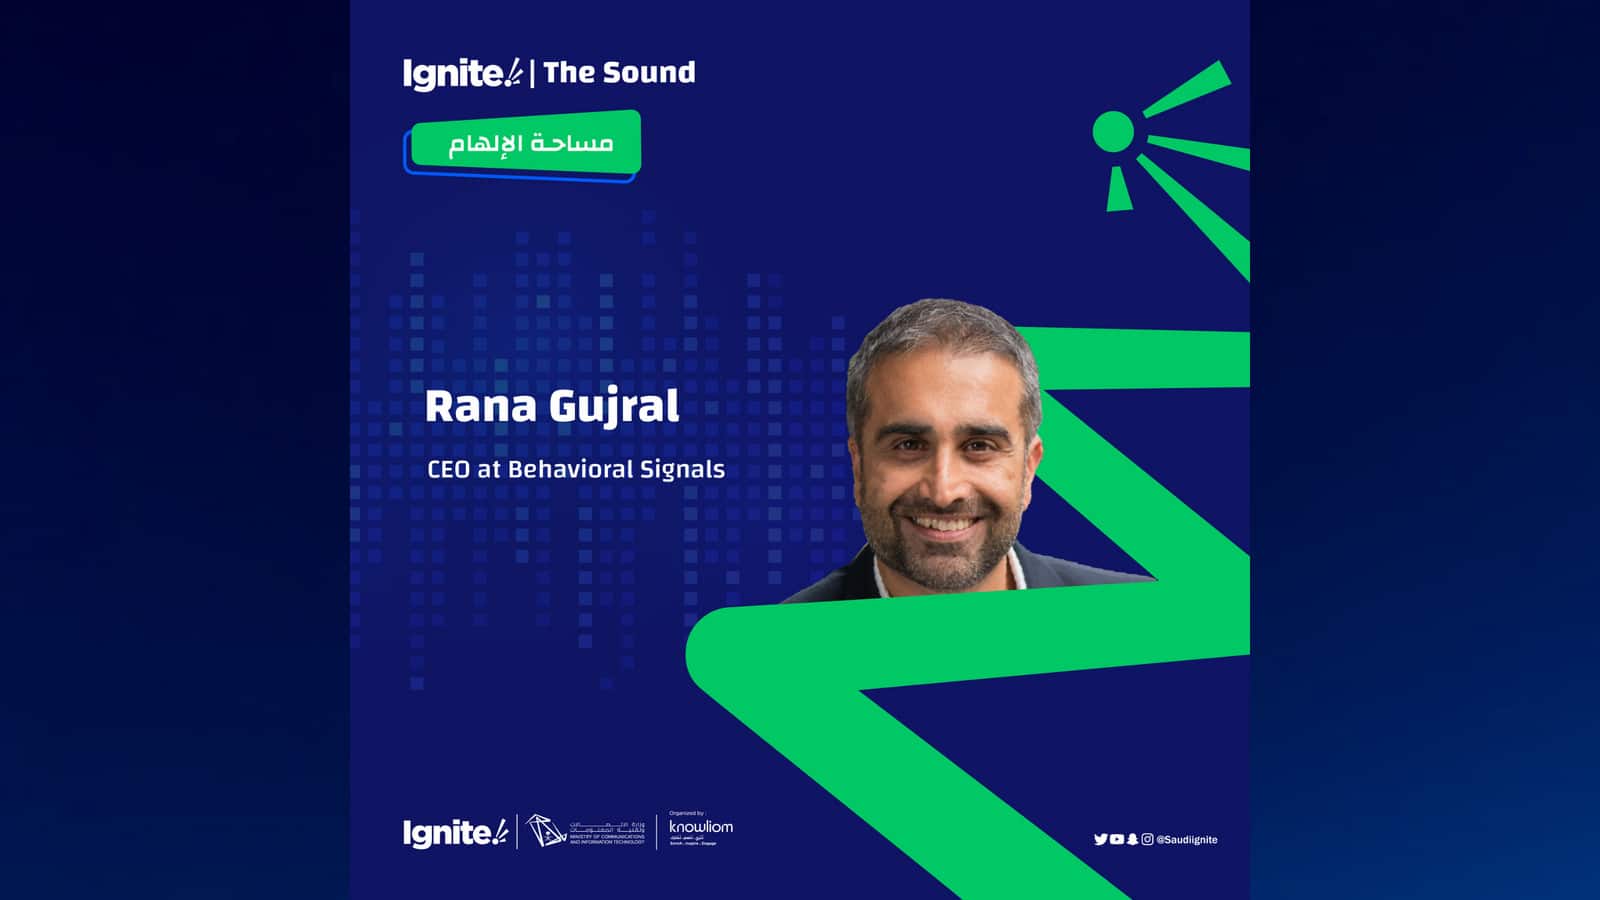 Rana-Gujral-Ignite-the-Sound-Behavioral-Signals